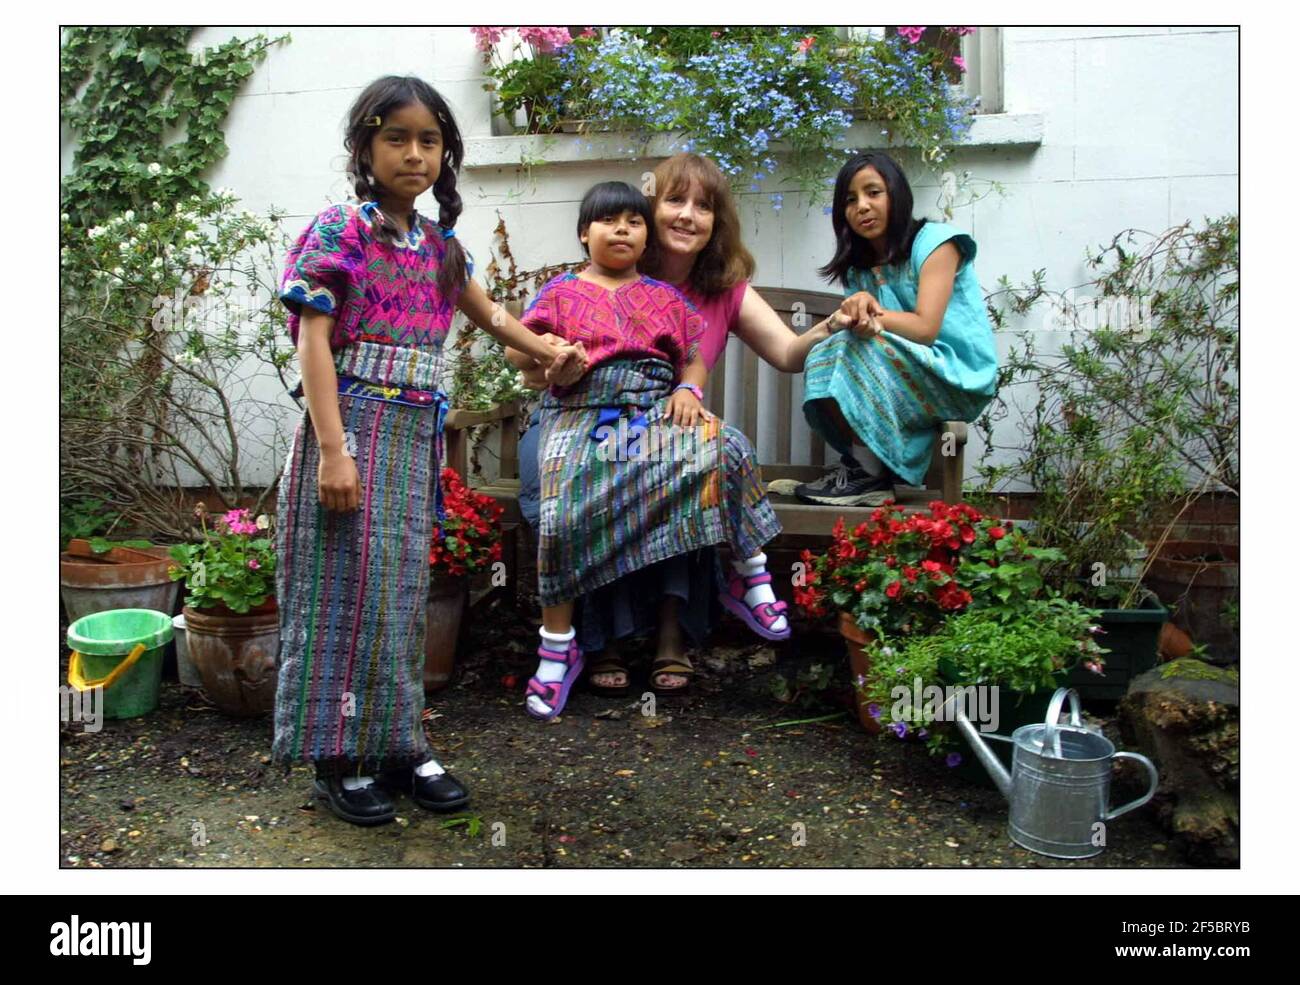 Catriona Aldridge mit adoptierten Töchtern Sofia (7) kürzeste, Bella (8) Pigtails und ITMA (9) höchste.Bild David Sandison 16/7/2003 Stockfoto